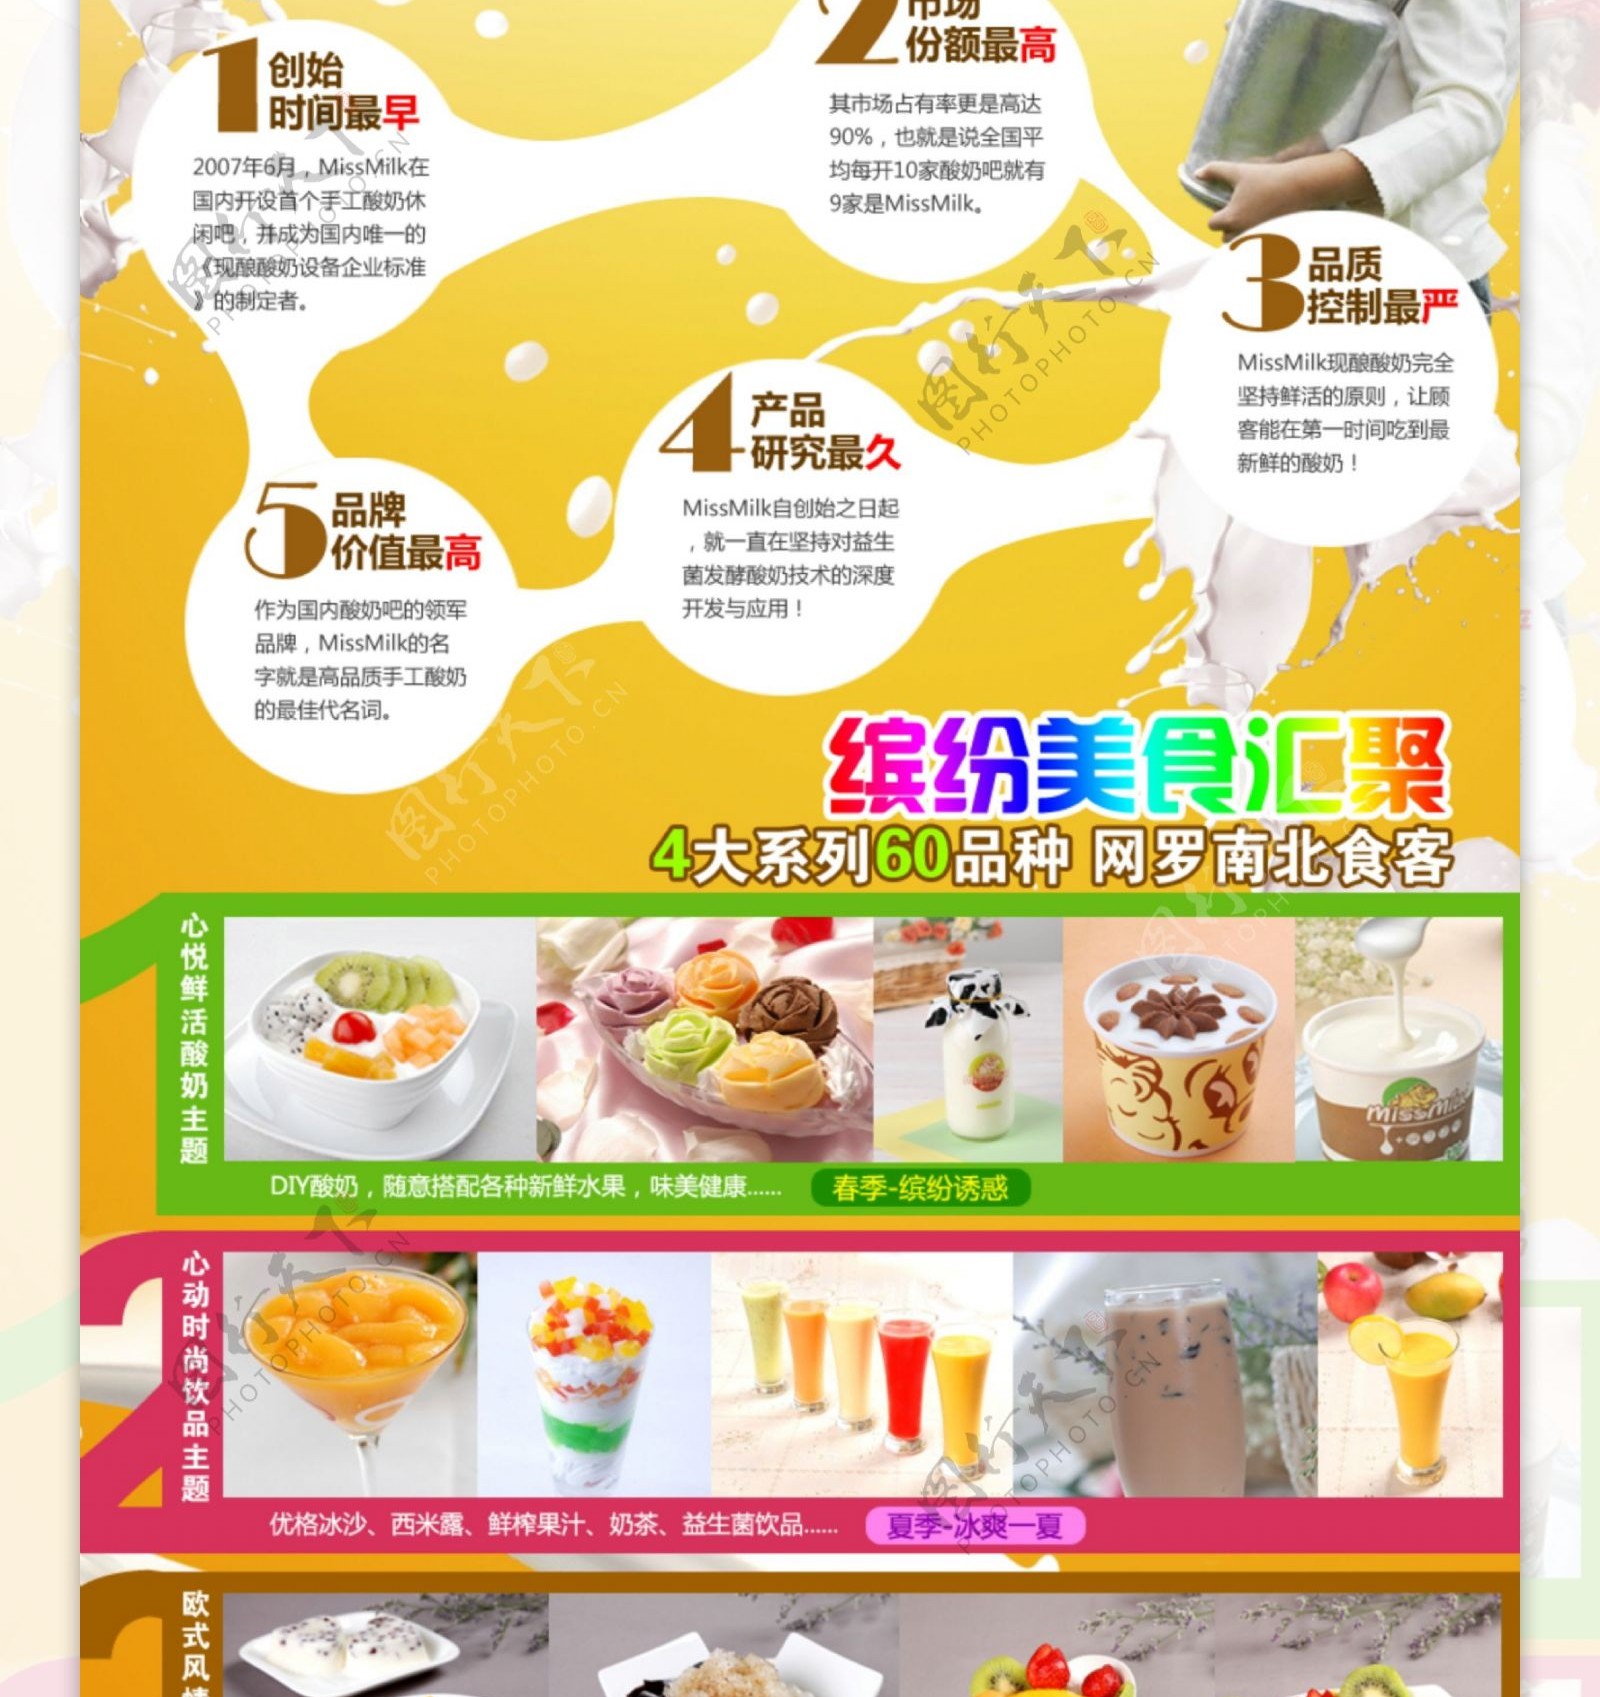 美食美客酸奶招商加盟页面设计图片